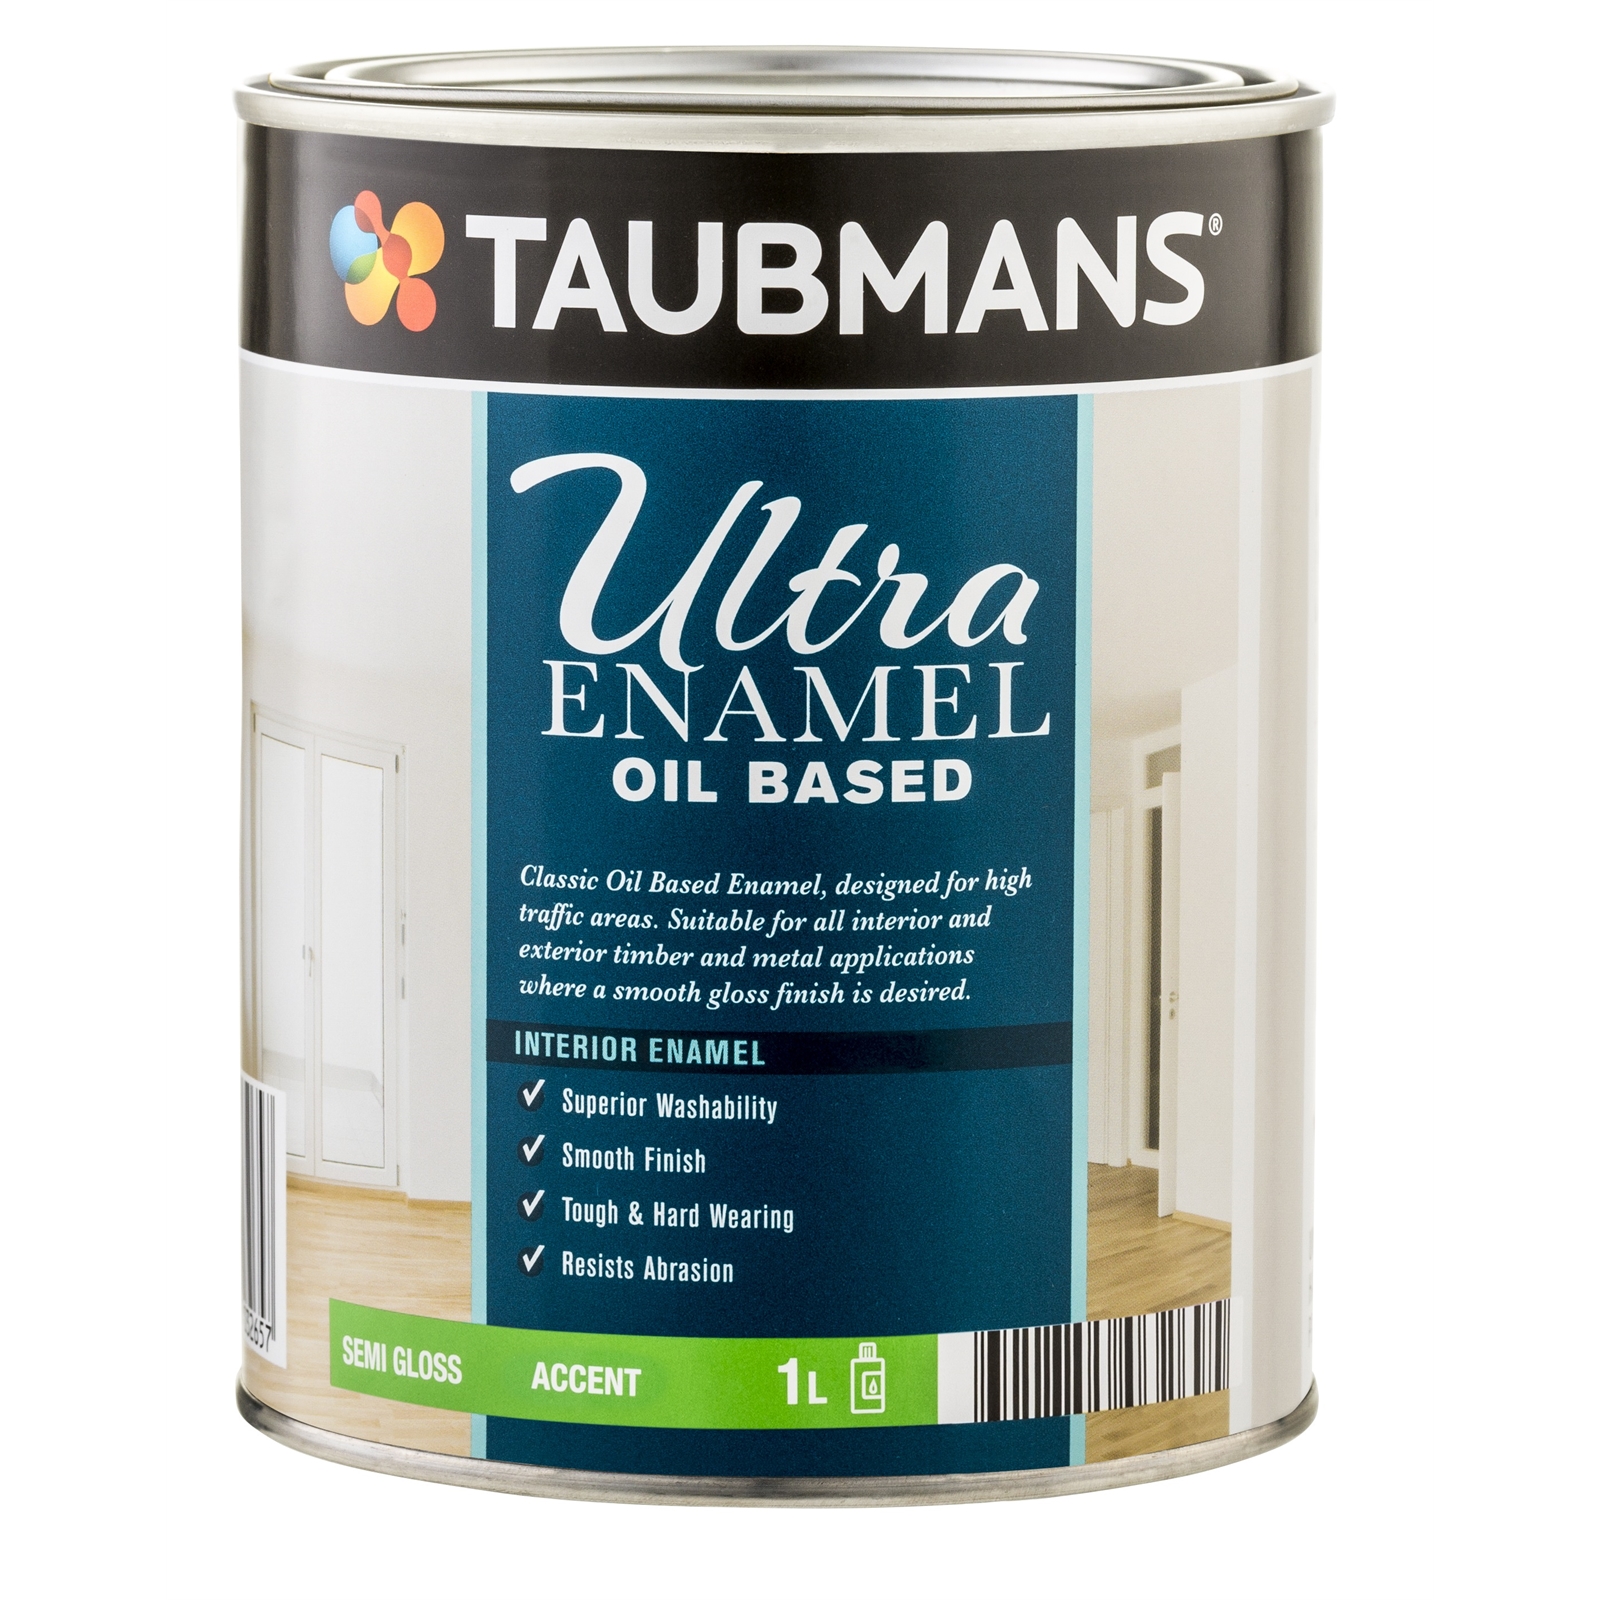 Taubmans Ultra Enamel 1L Accent Gloss Oil Based Enamel